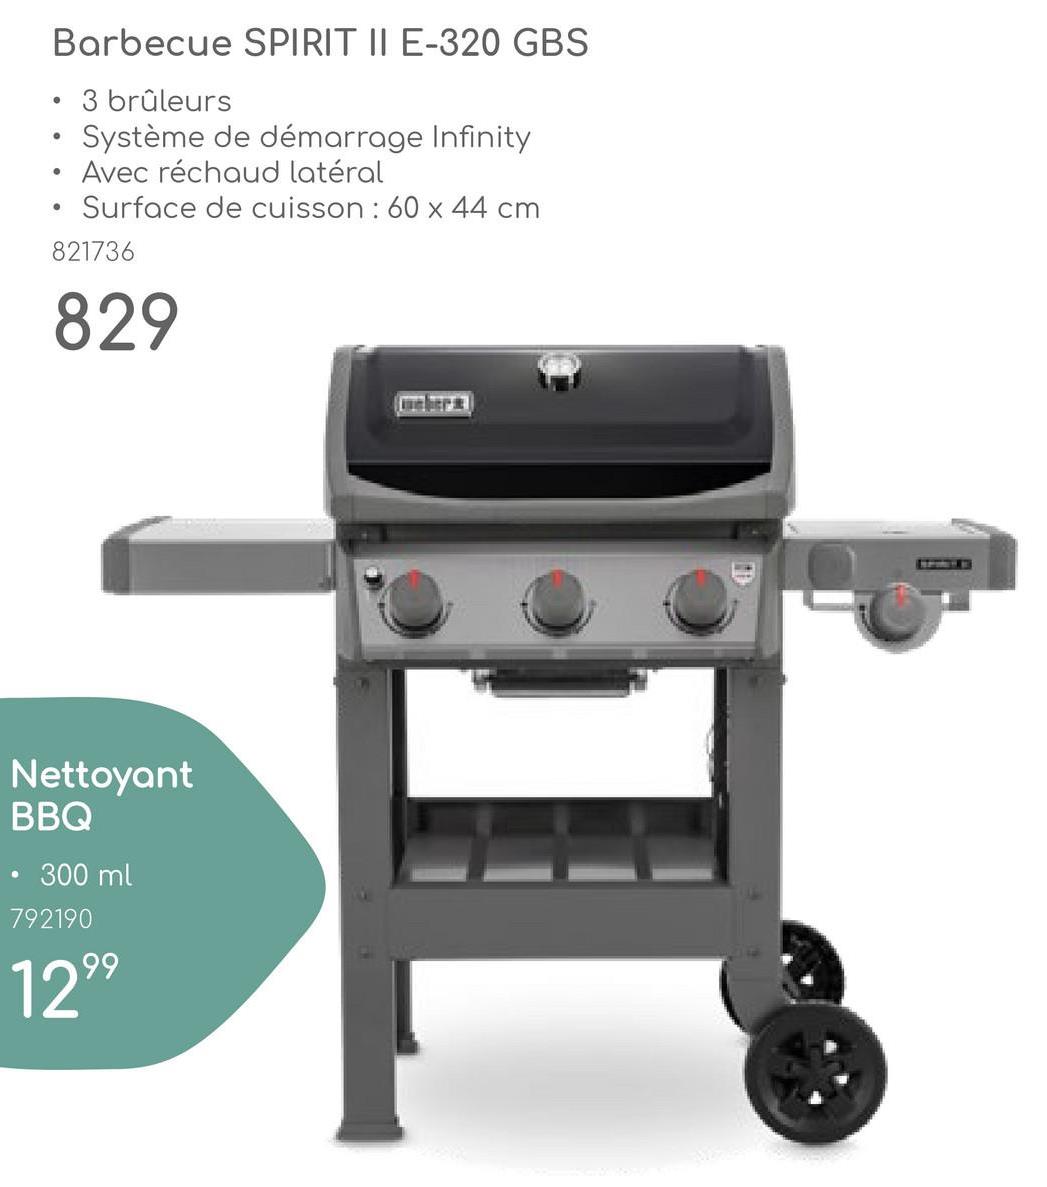 •
Barbecue SPIRIT II E-320 GBS
3 brûleurs
Système de démarrage Infinity
Avec réchaud latéral
Surface de cuisson: 60x44 cm
821736
829
骨
Nettoyant
BBQ
300ml
792190
1299